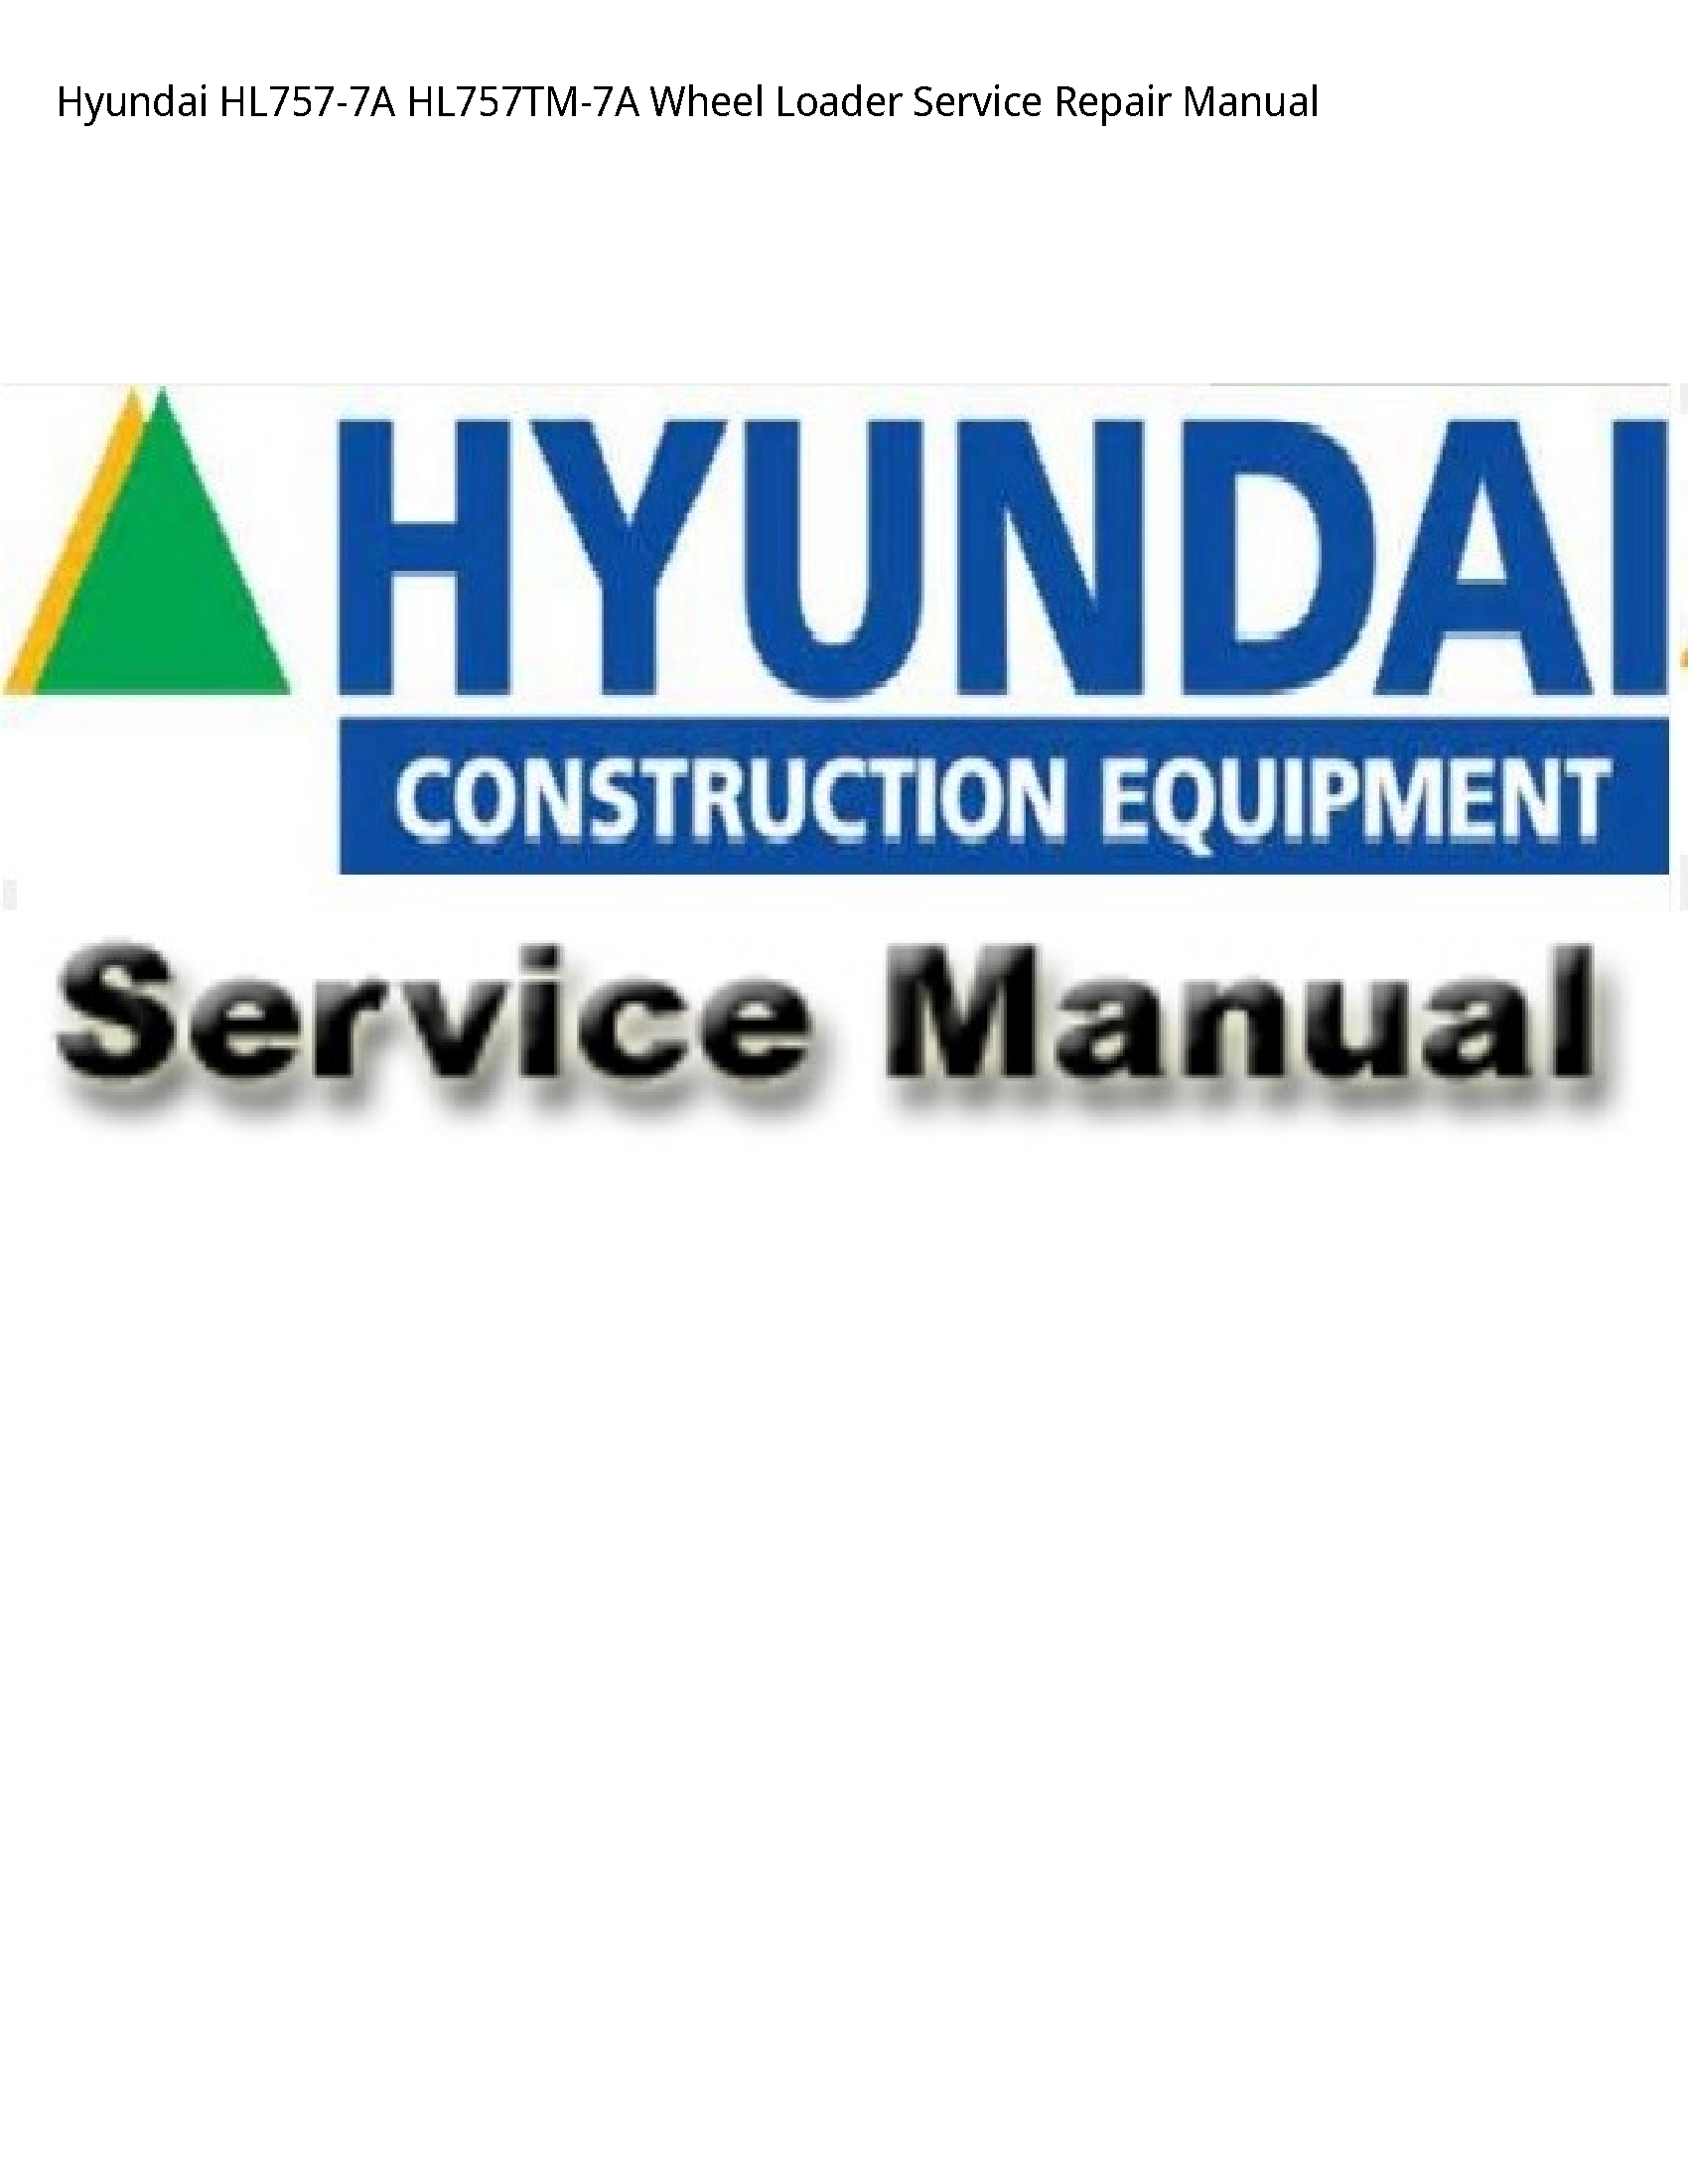 Hyundai HL757-7A Wheel Loader manual